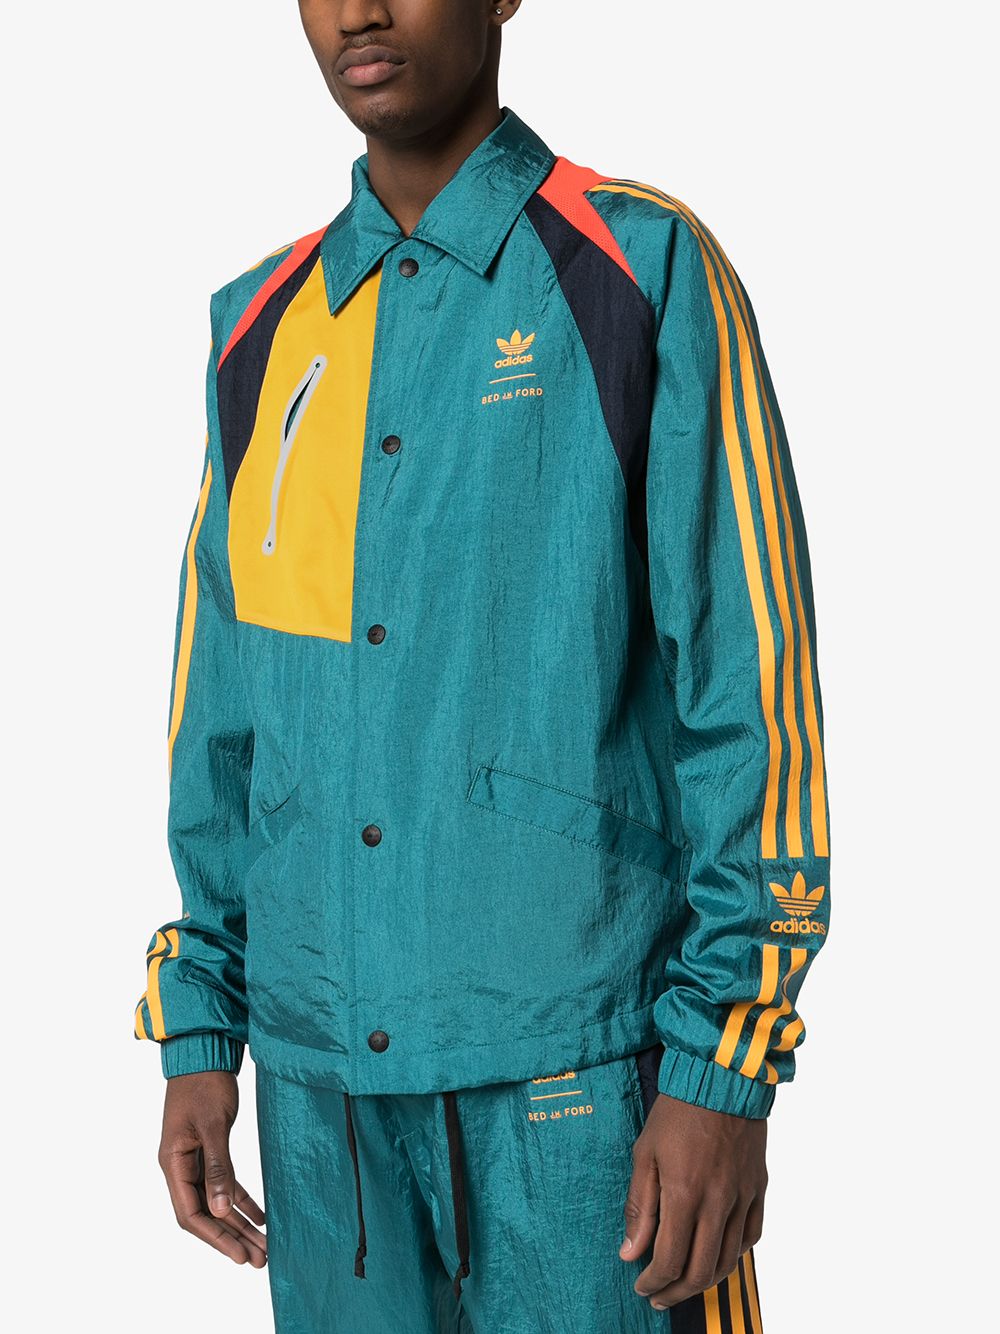 фото Adidas куртка из коллаборации с bed j.w. ford